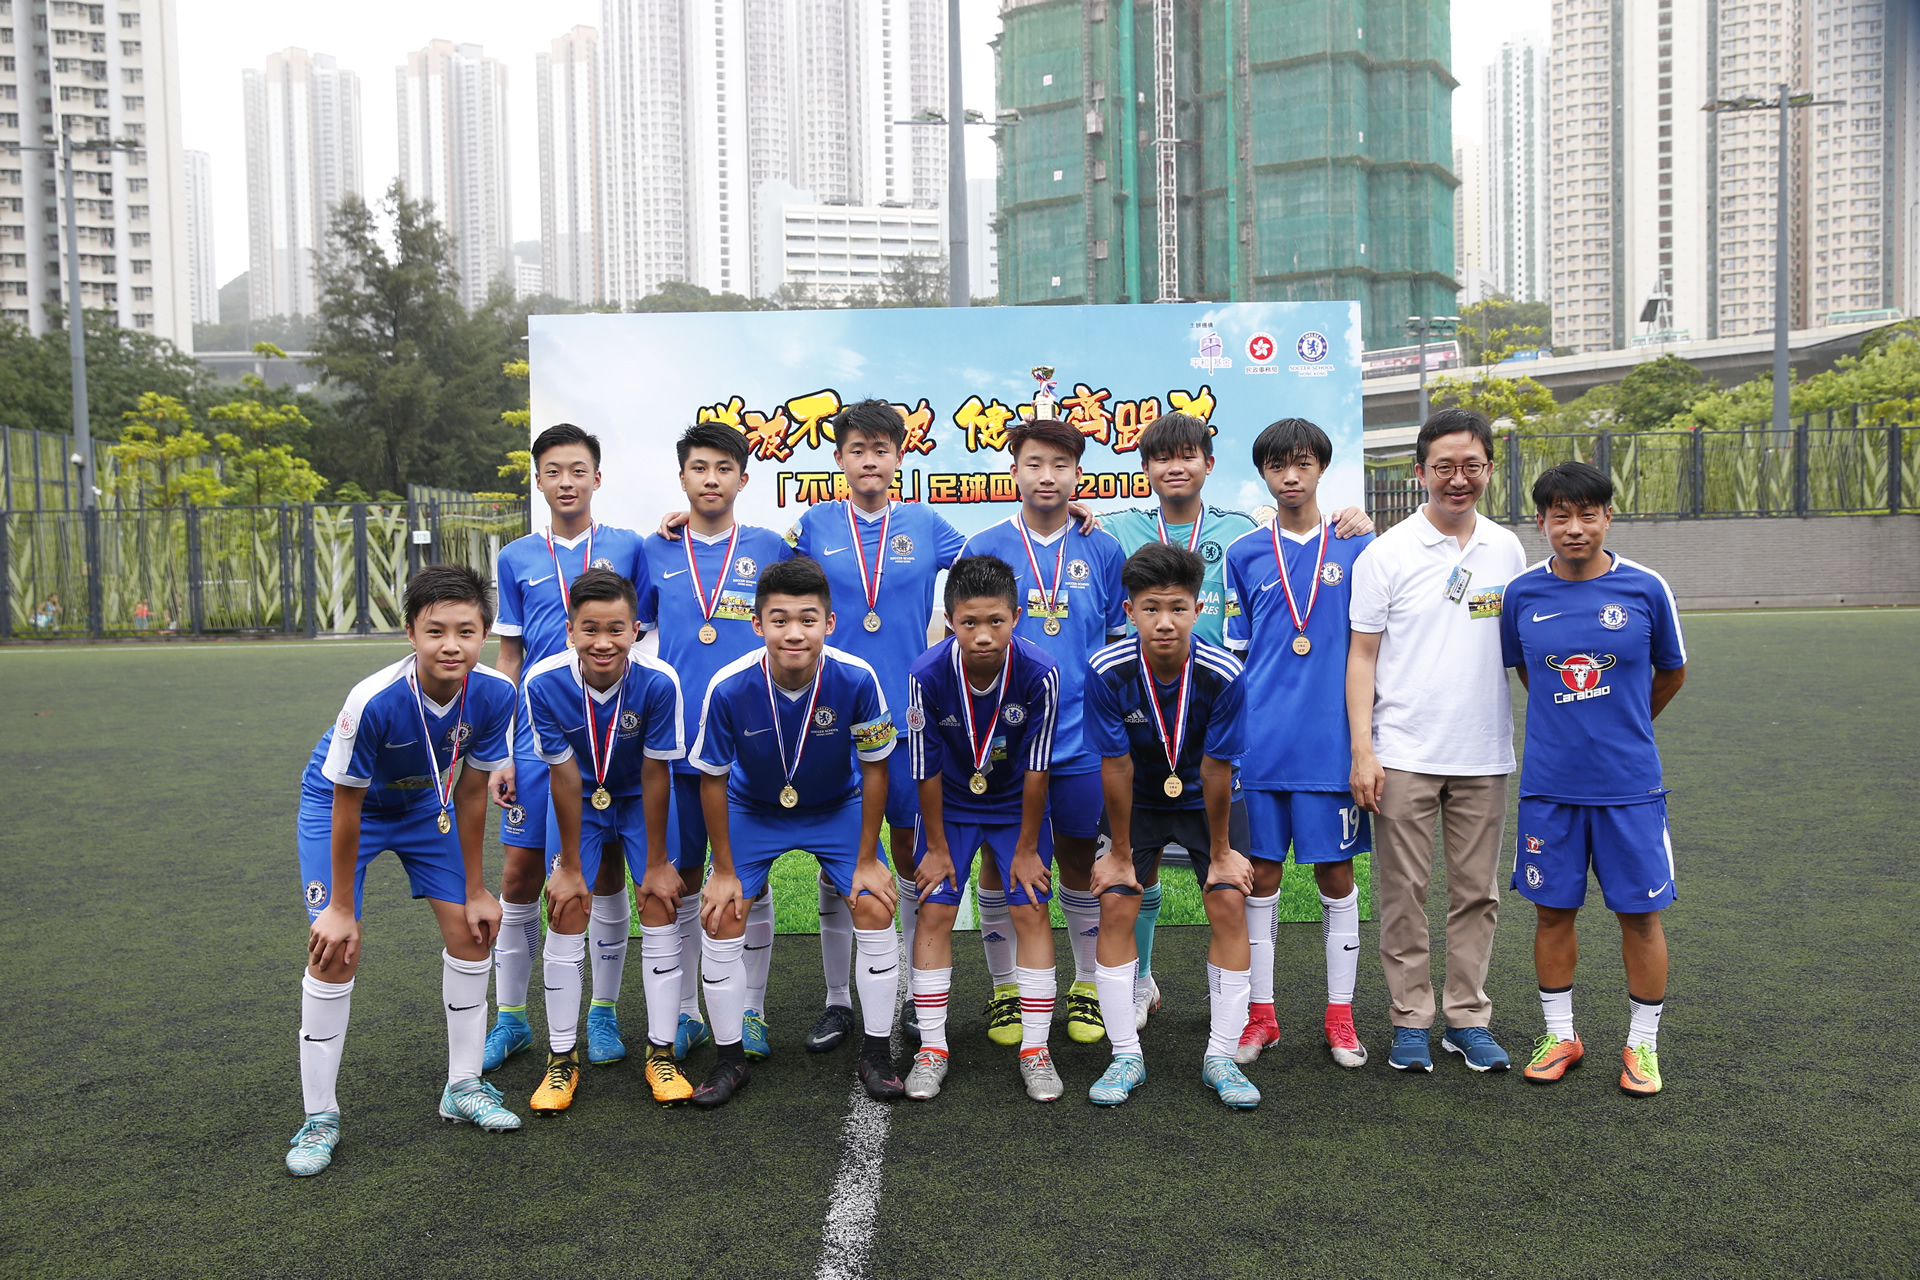 平和基金諮詢委員會主席葉振都先生頒獎予冠軍隊伍車路士足球學校（香港）。